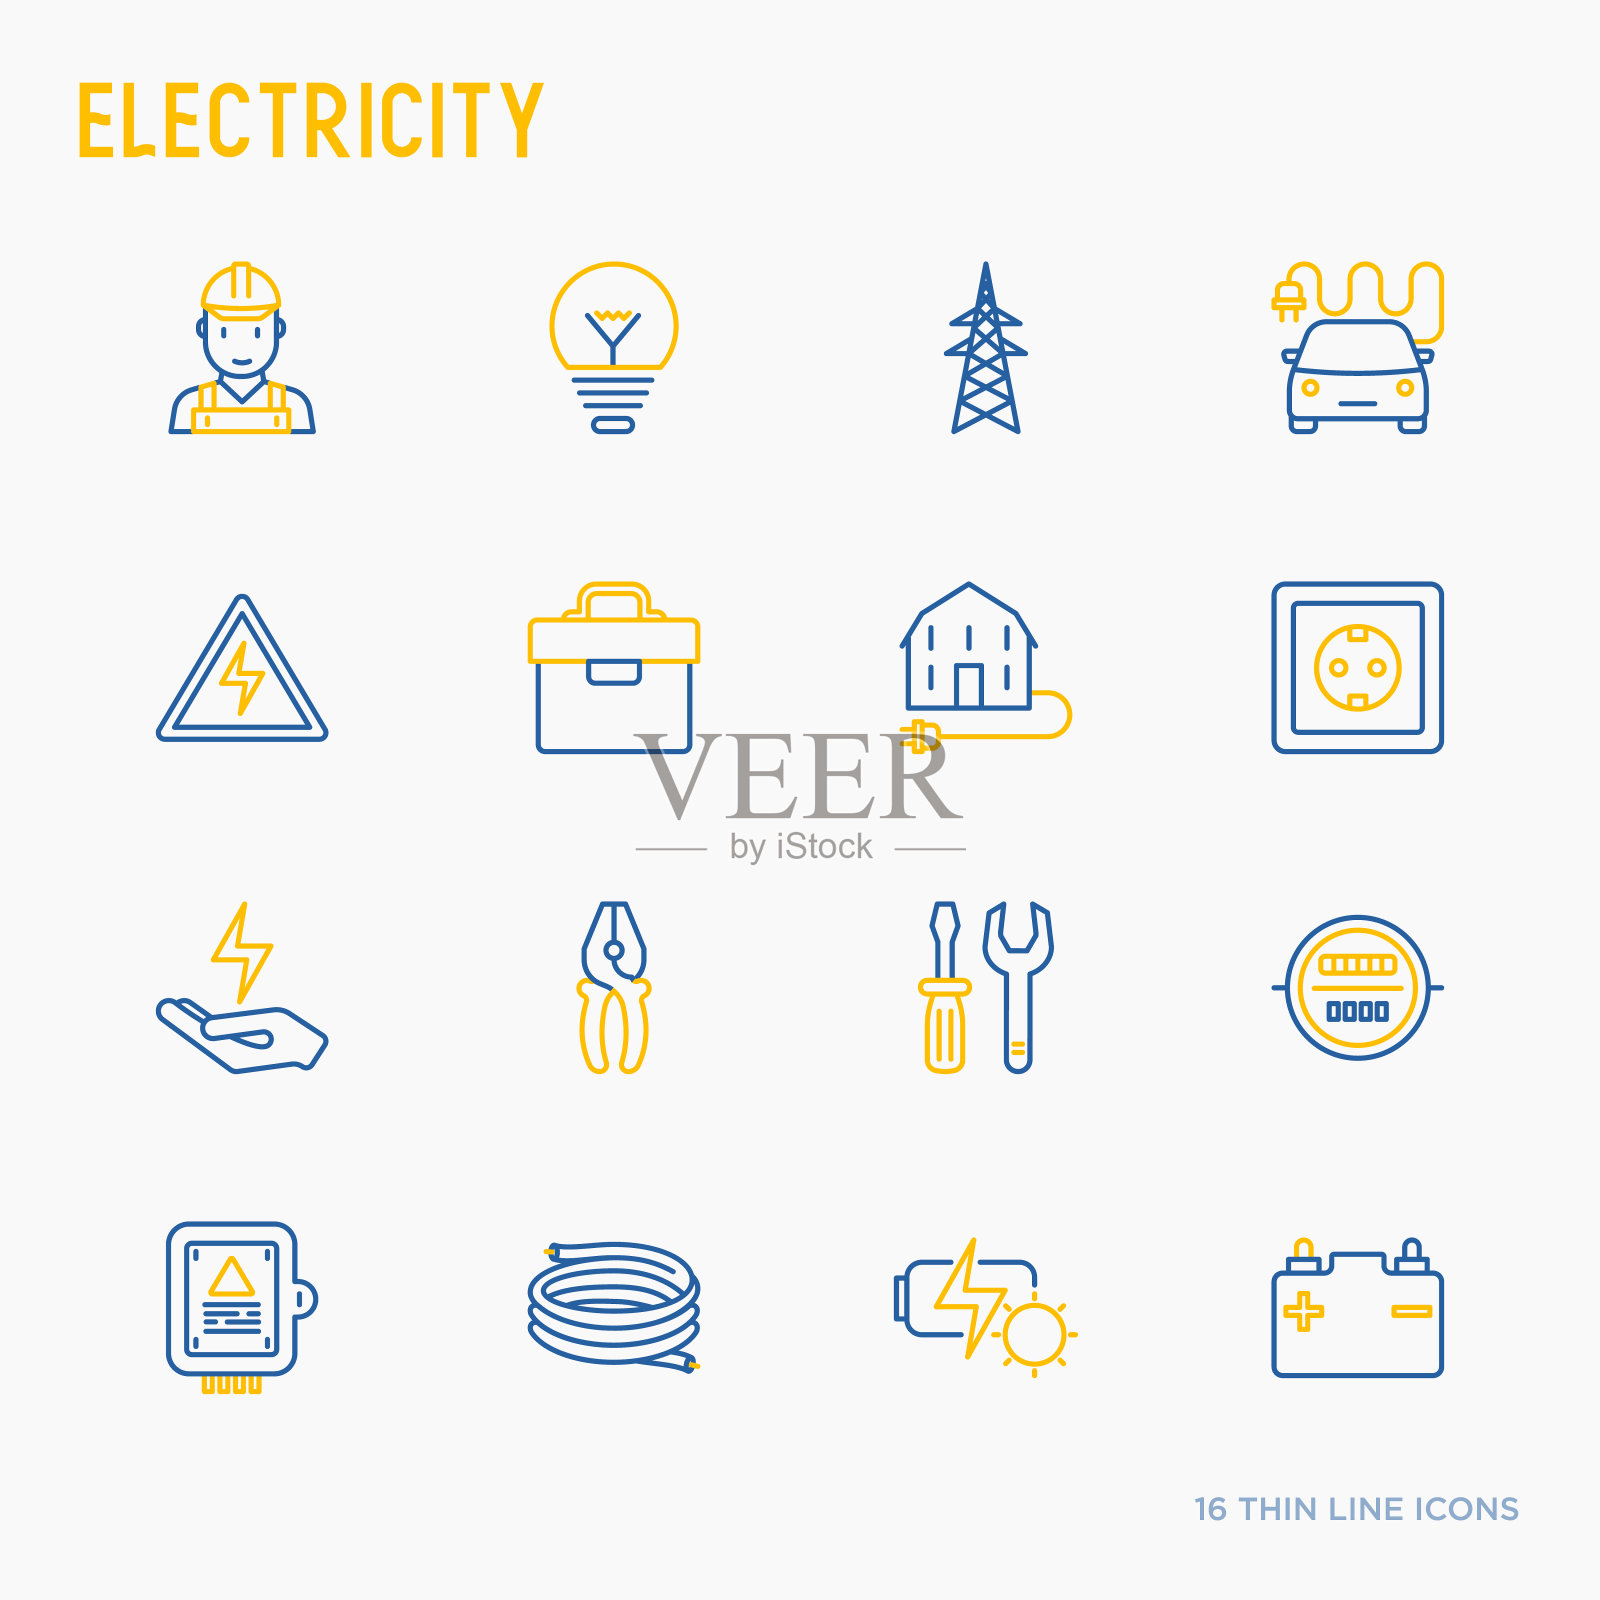 电细线图标集:电工，灯泡，电塔，工具箱，电缆，电动车，手，太阳能电池。矢量插图。图标素材